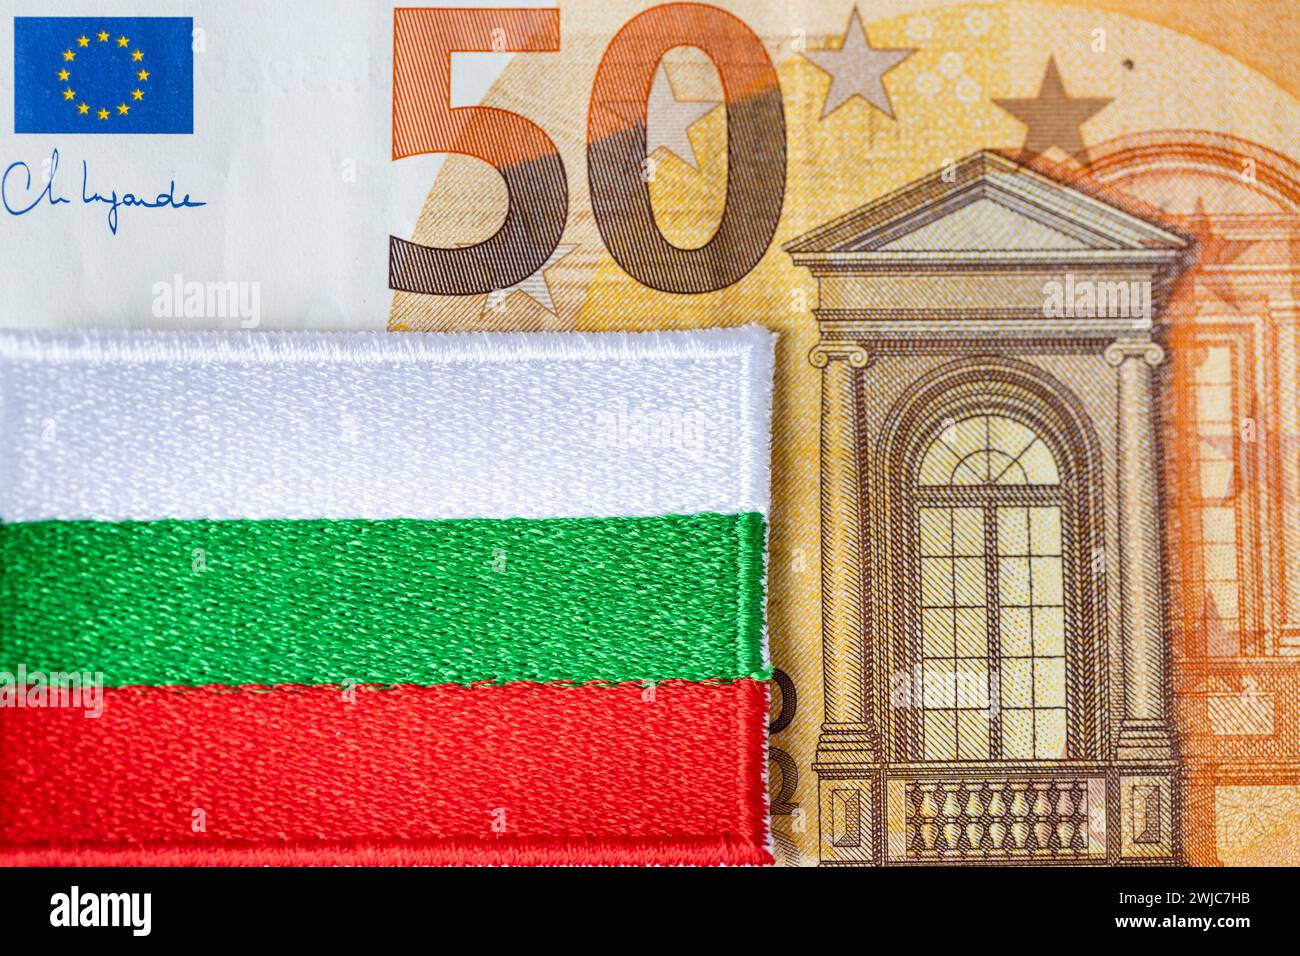 50 Euro-Banknote und bulgarische Flagge, Konzept, Umrechnung des bulgarischen Lew in Euro, Einführung der gemeinsamen europäischen Währung durch Bulgaren Stockfoto